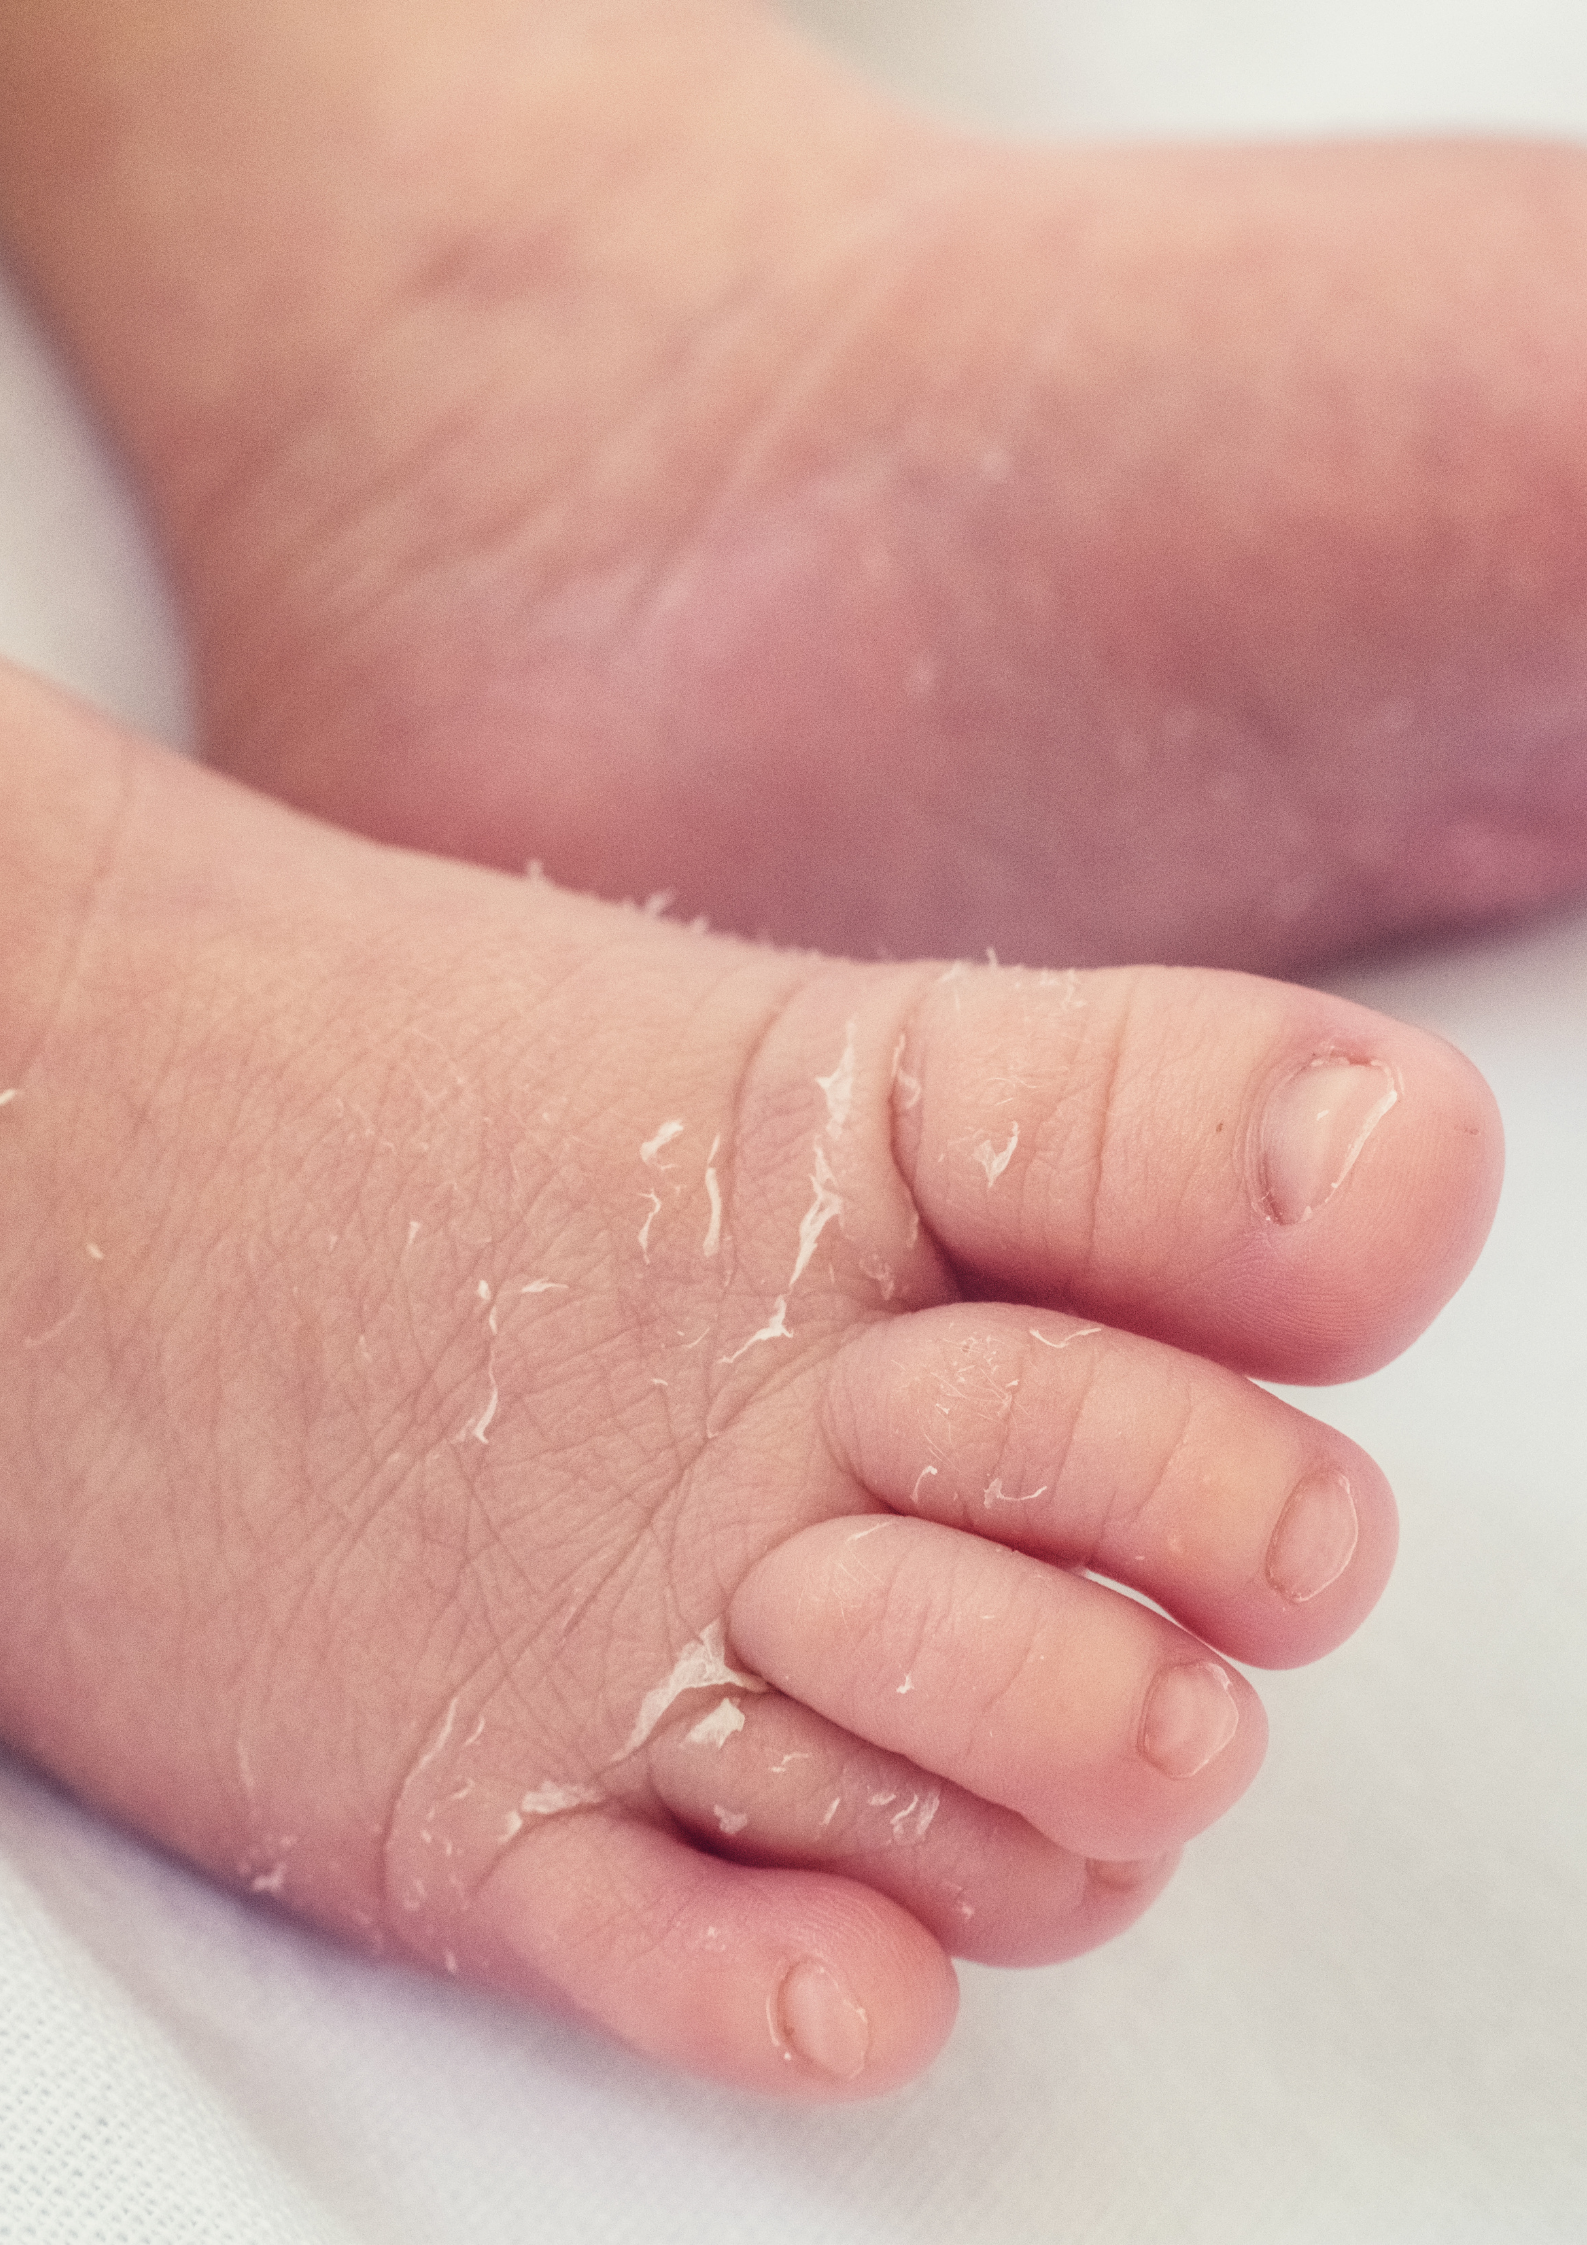 Dry skin in Babies